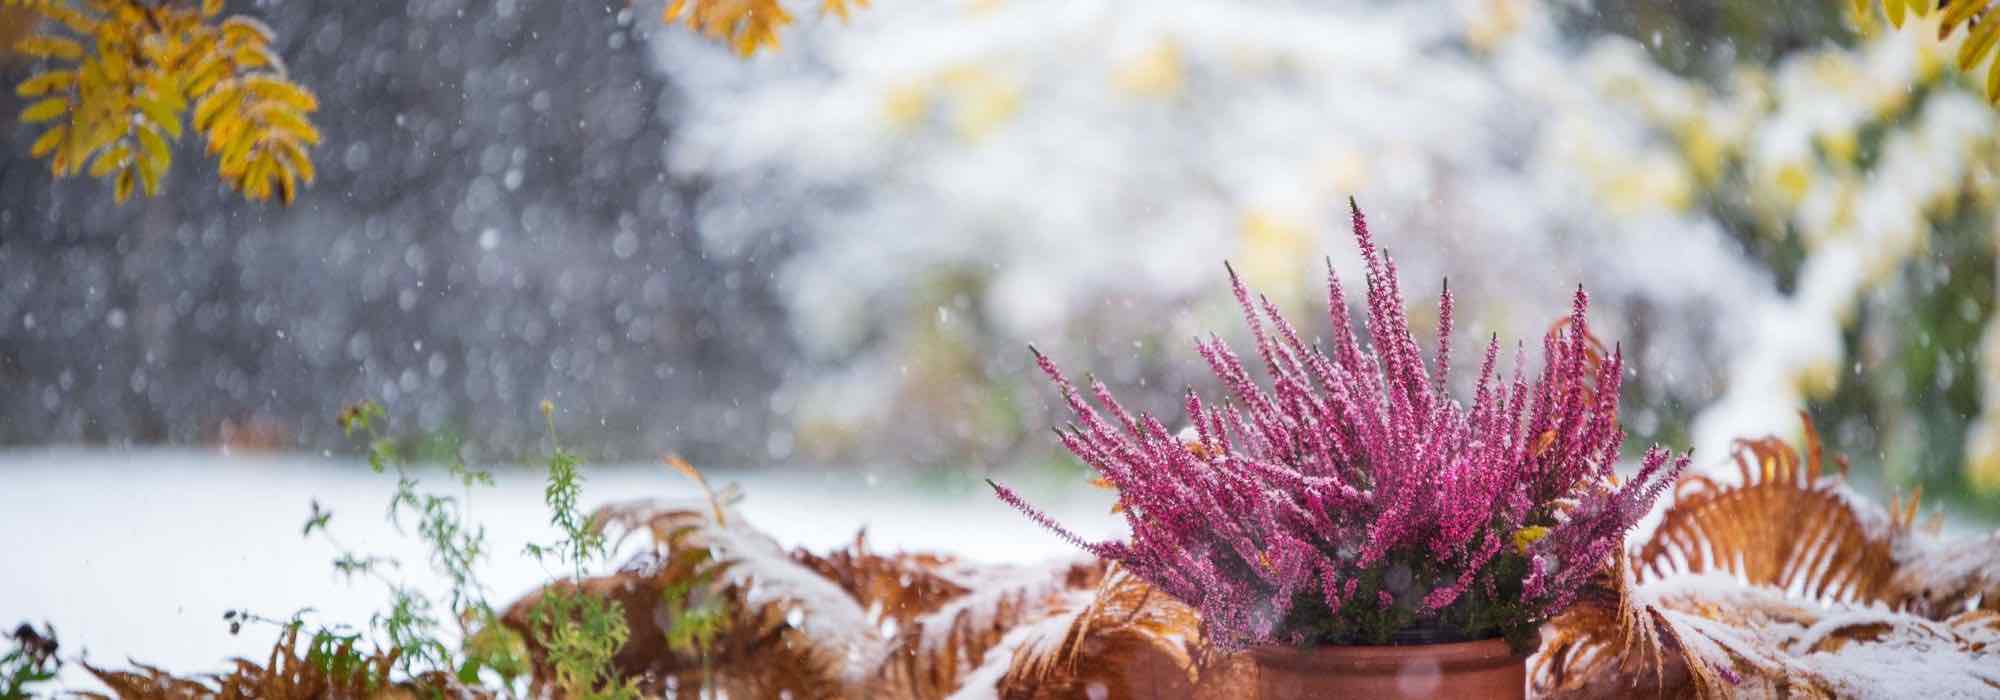 Plantes d'extérieur hiver : les 10 variétés qui ne gèlent pas - L'Atelier  par Brico Privé